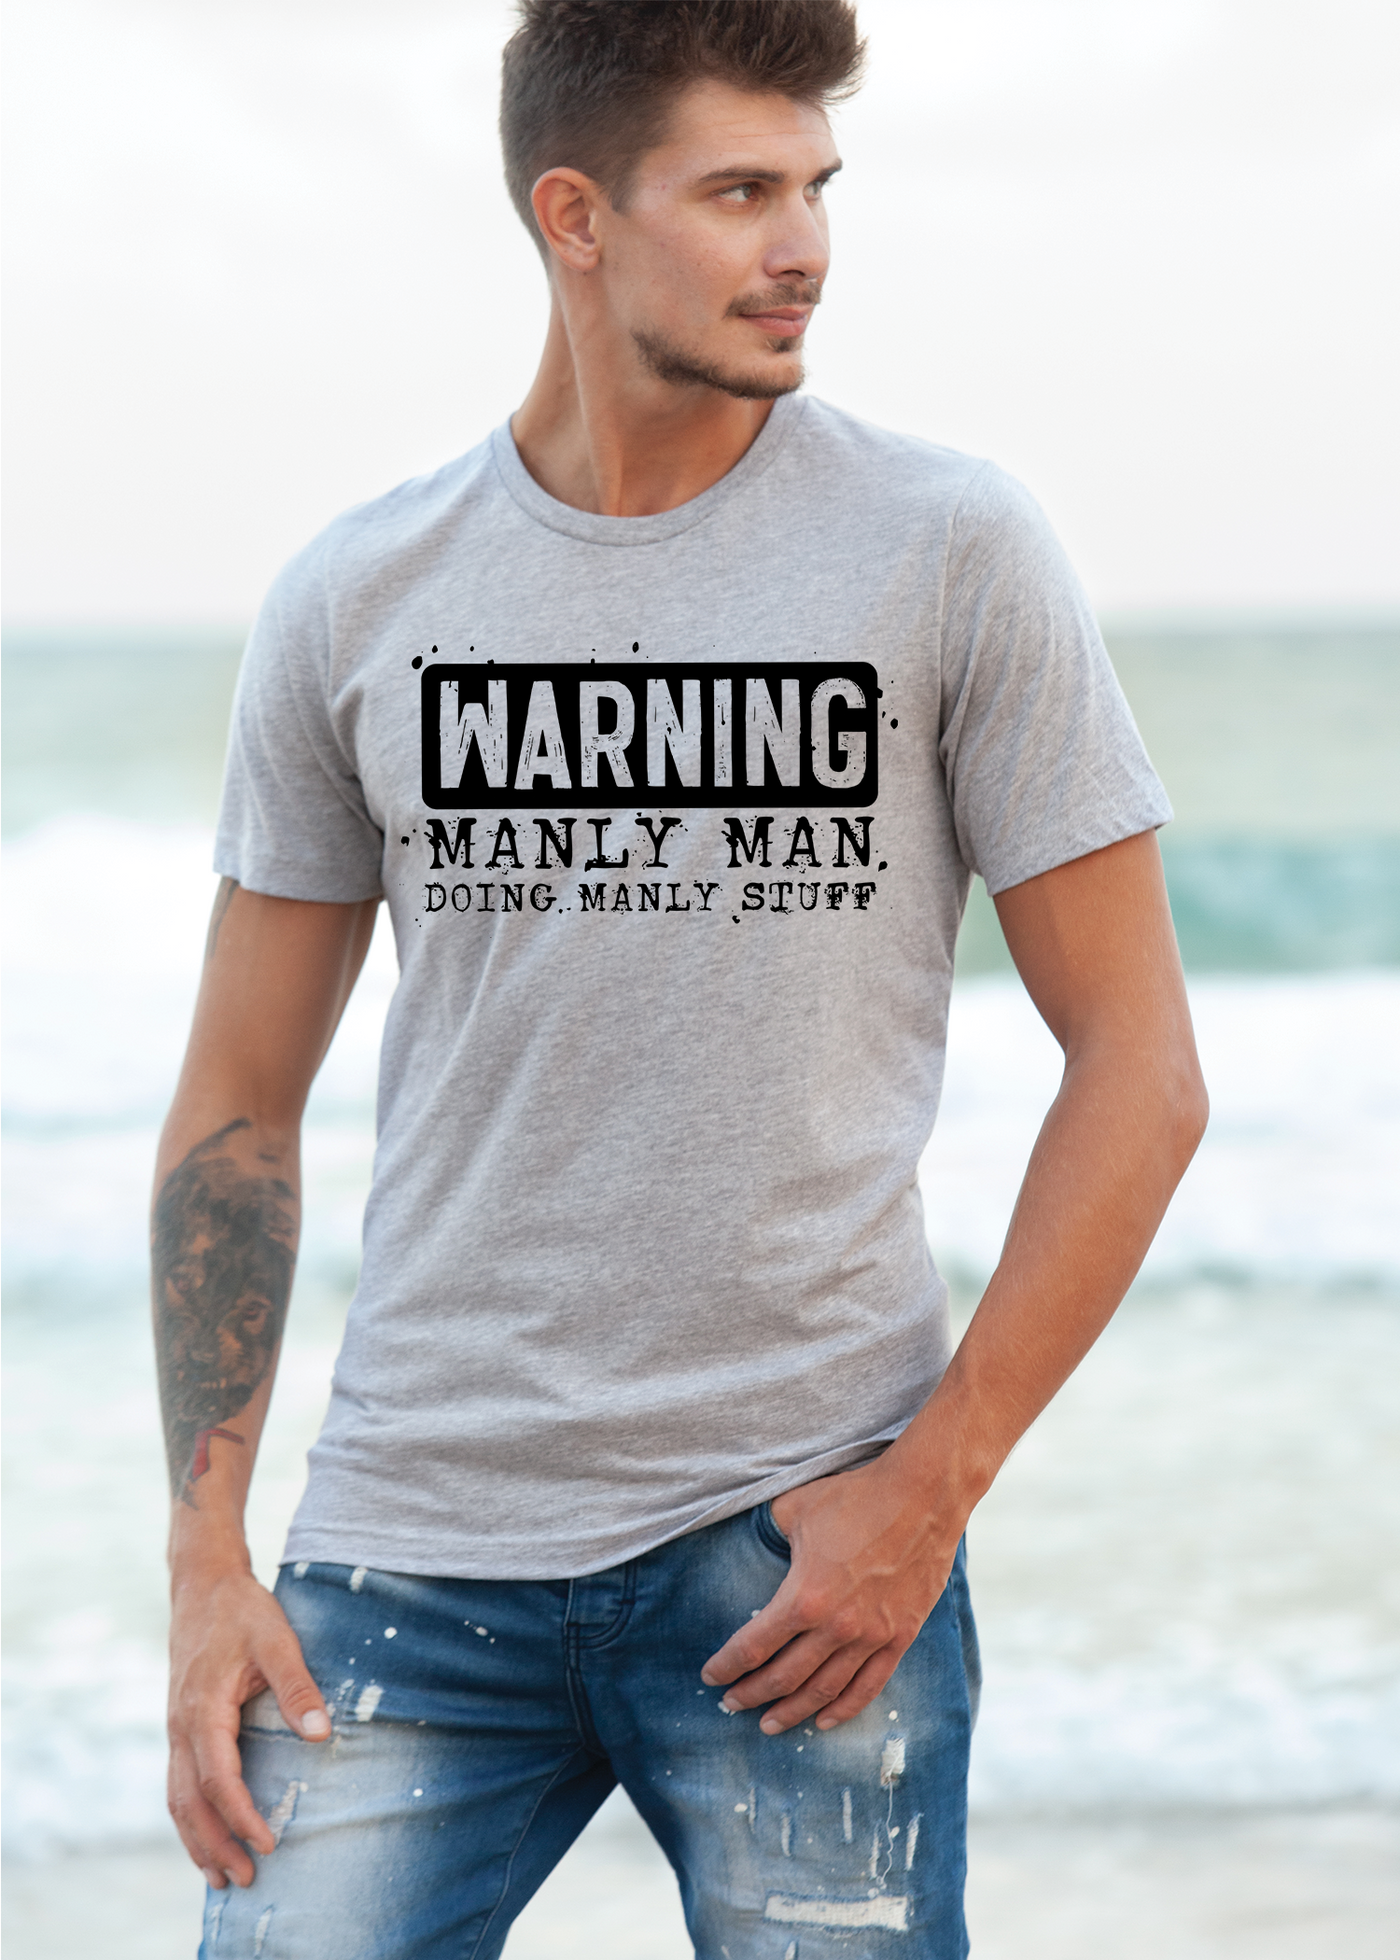 Warning manly man